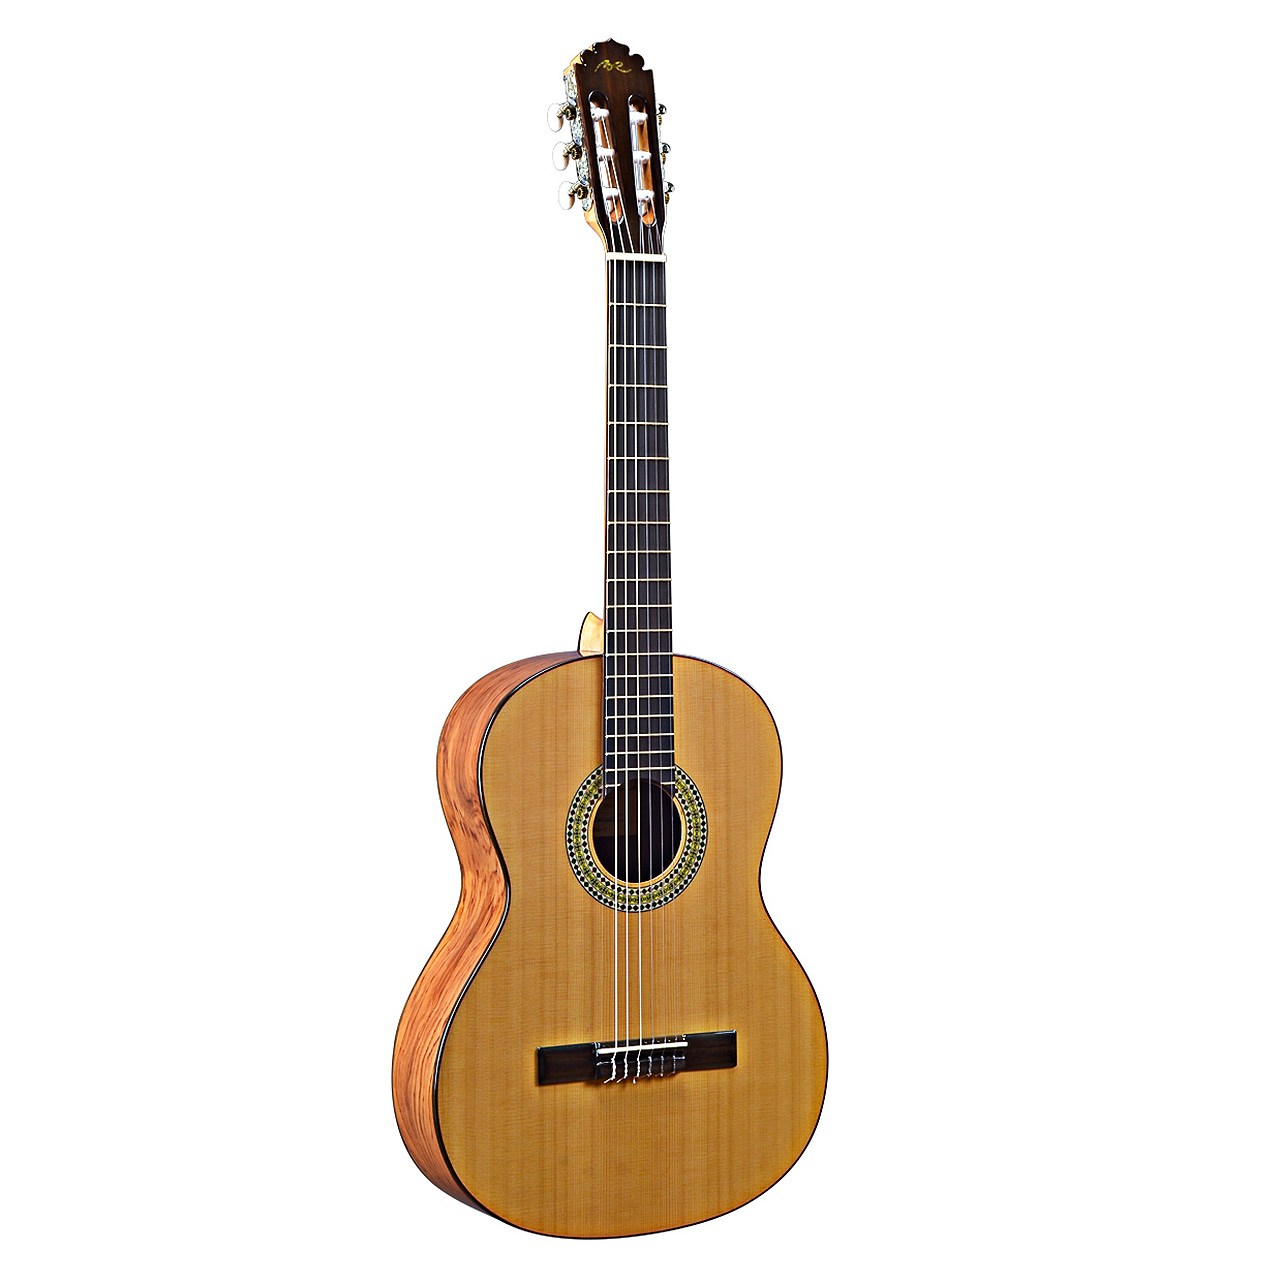 گیتار کلاسیک مانوئل رودریگز مدل Caballero 11